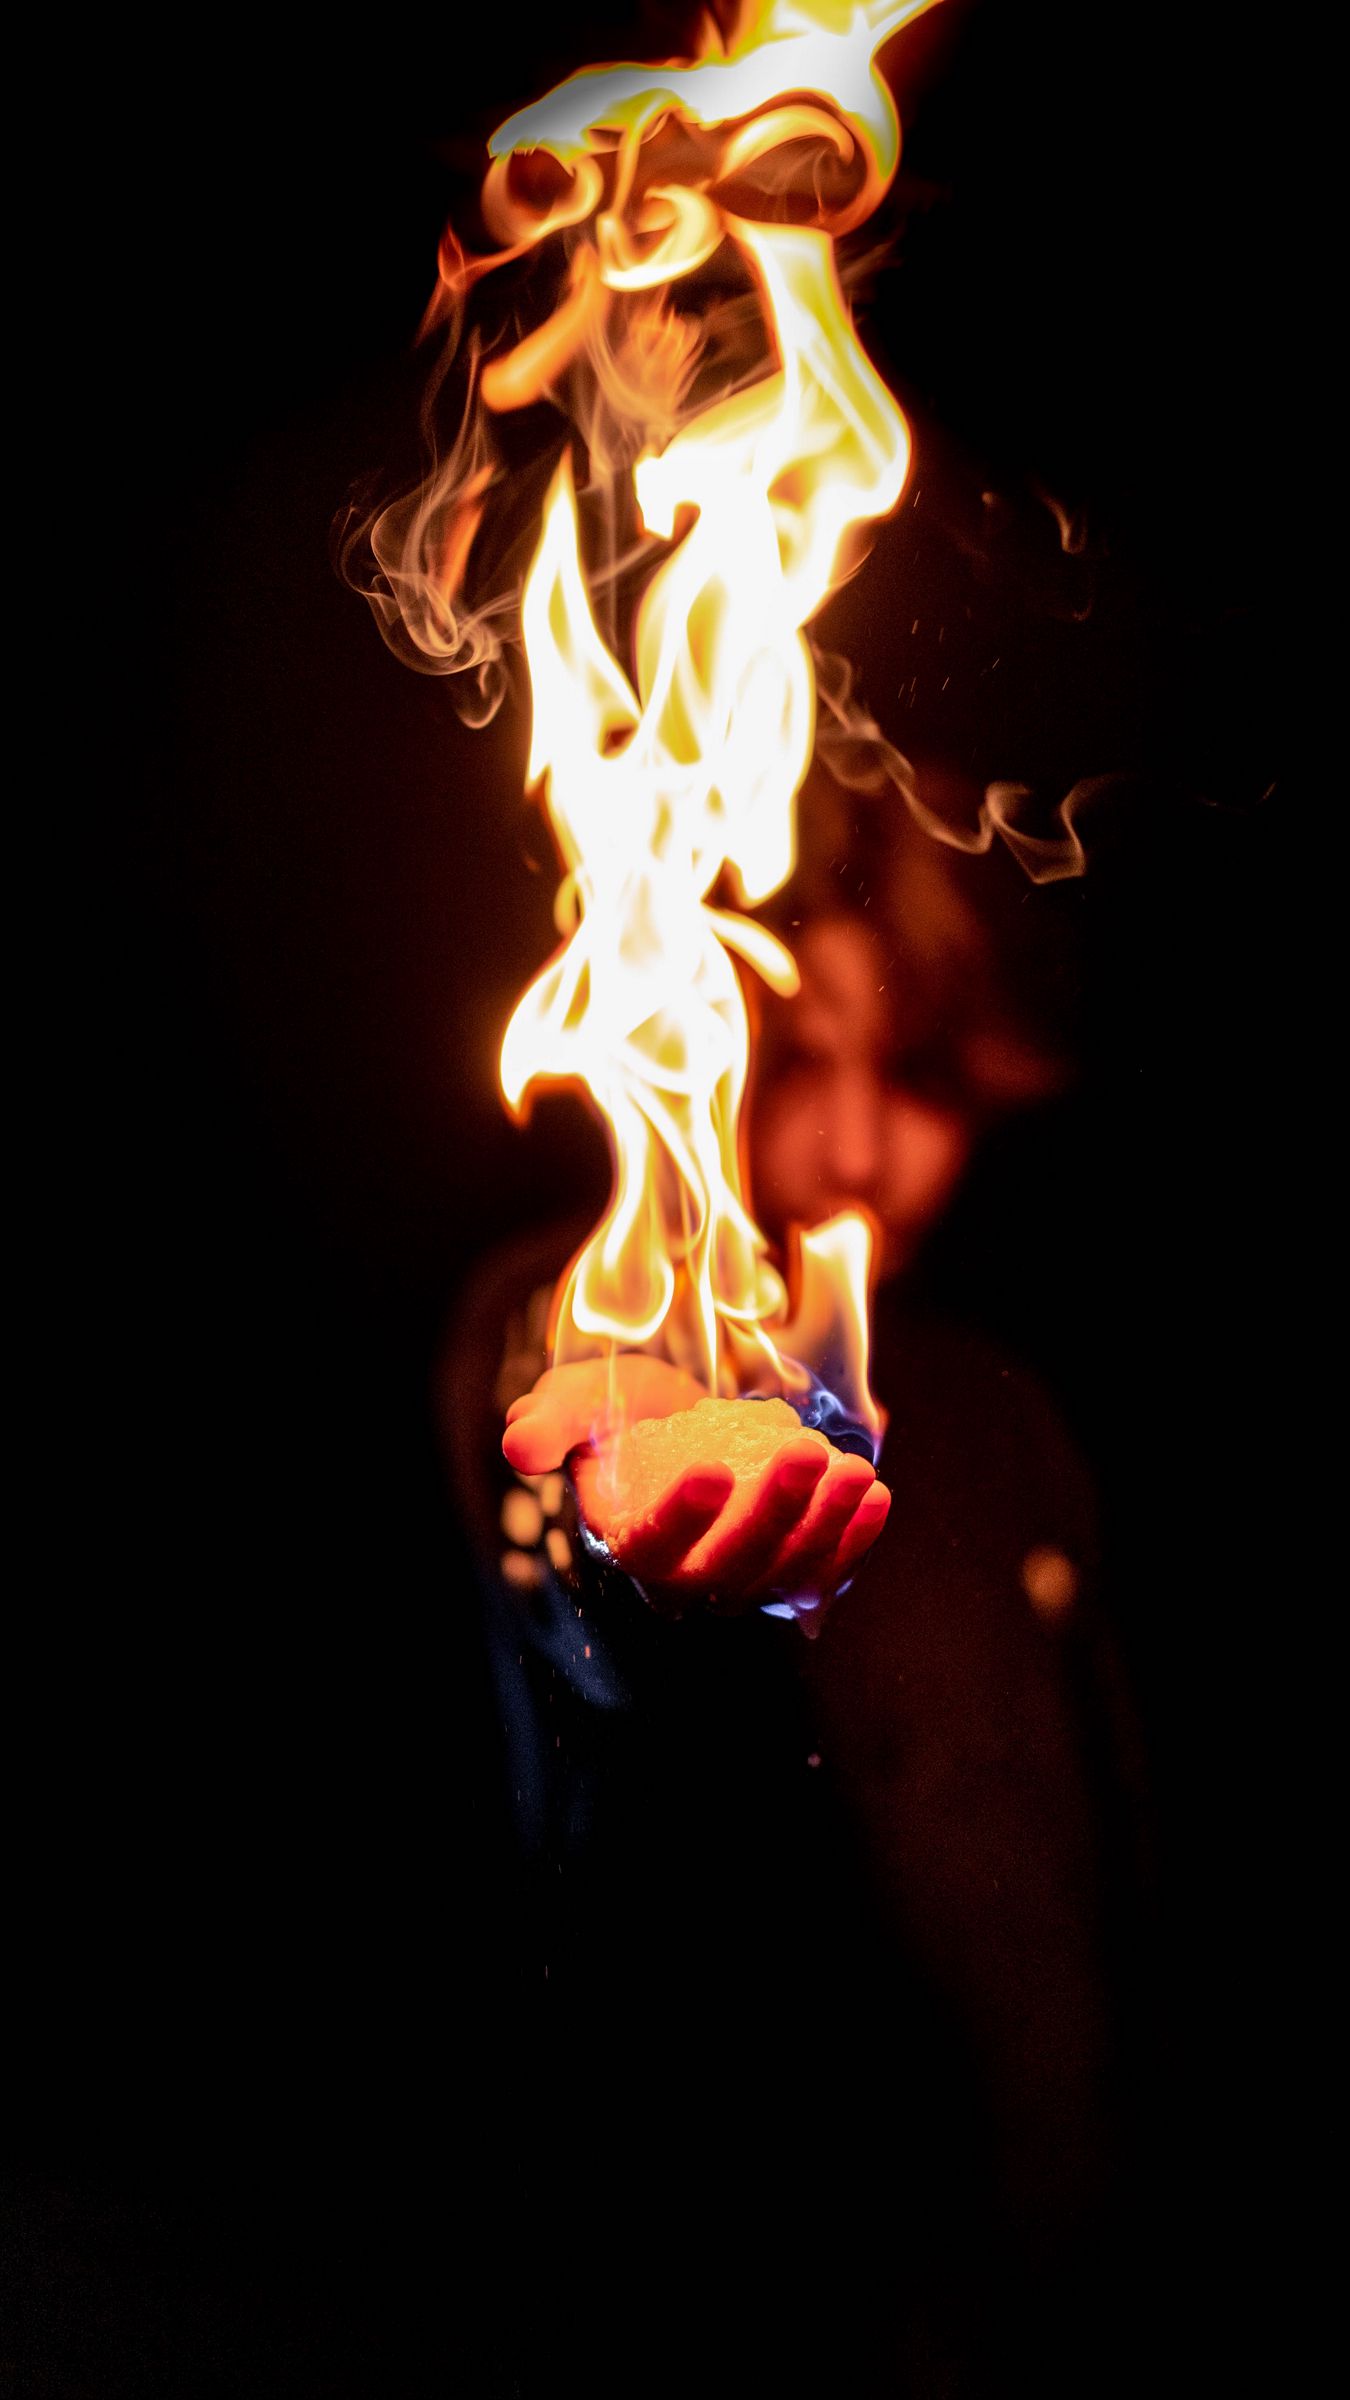 Wallpaper Flame Fire Hand Man Dark iPhone